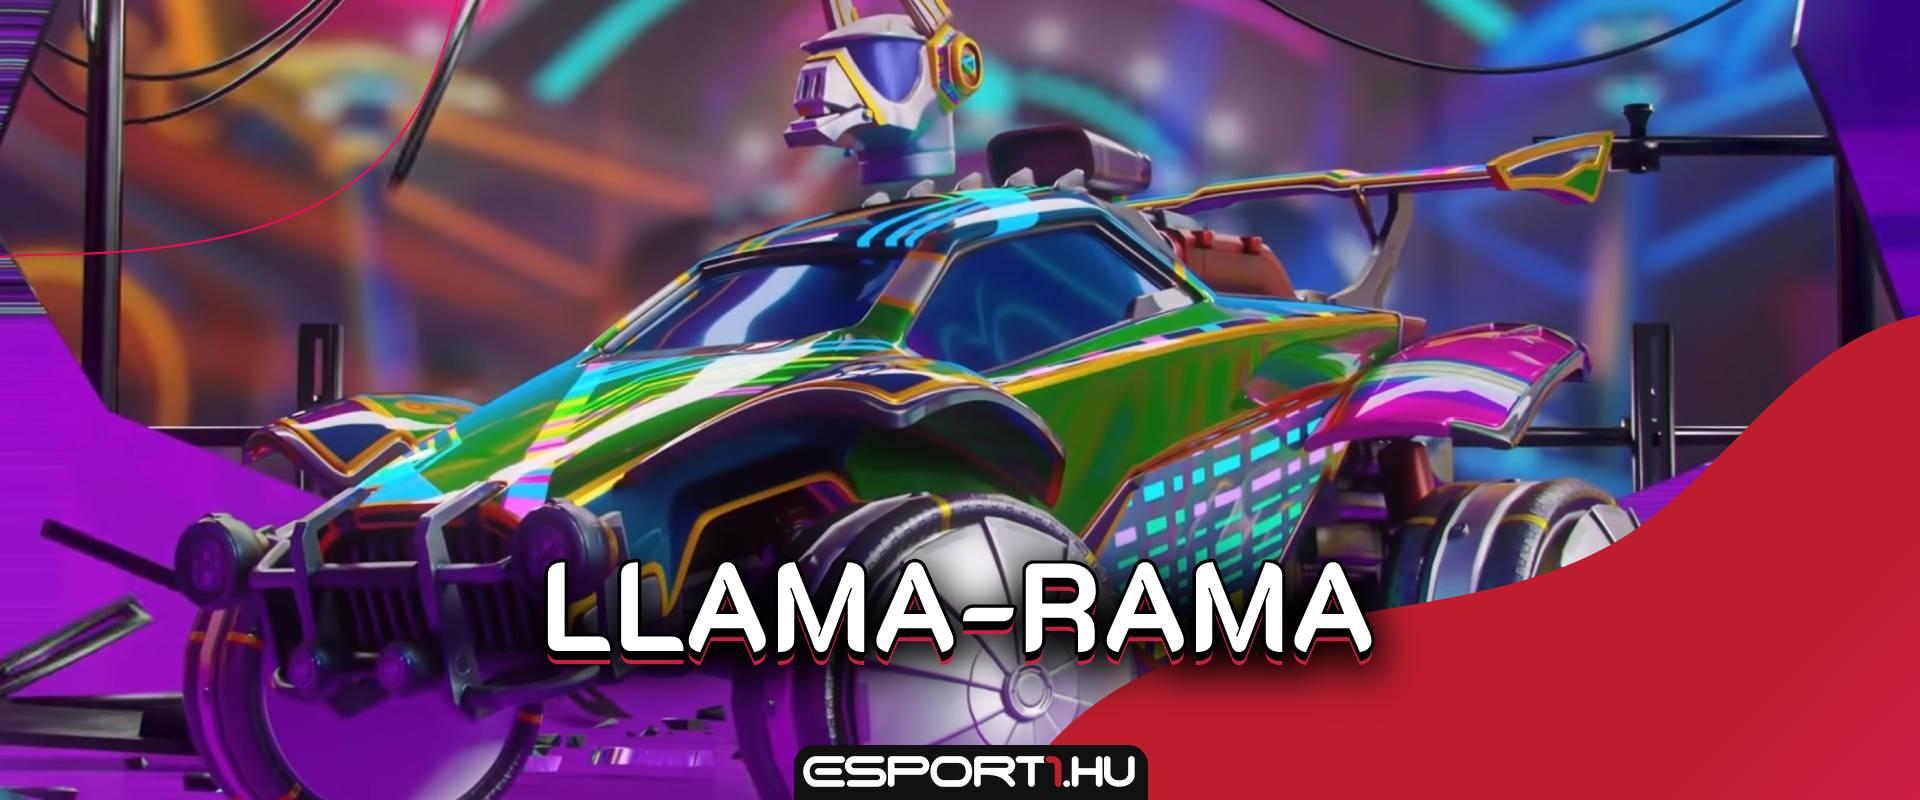 Újabb Llama Rama eventet jelentett be az Epic, felkészülnek a Fortnite és RL játékosok